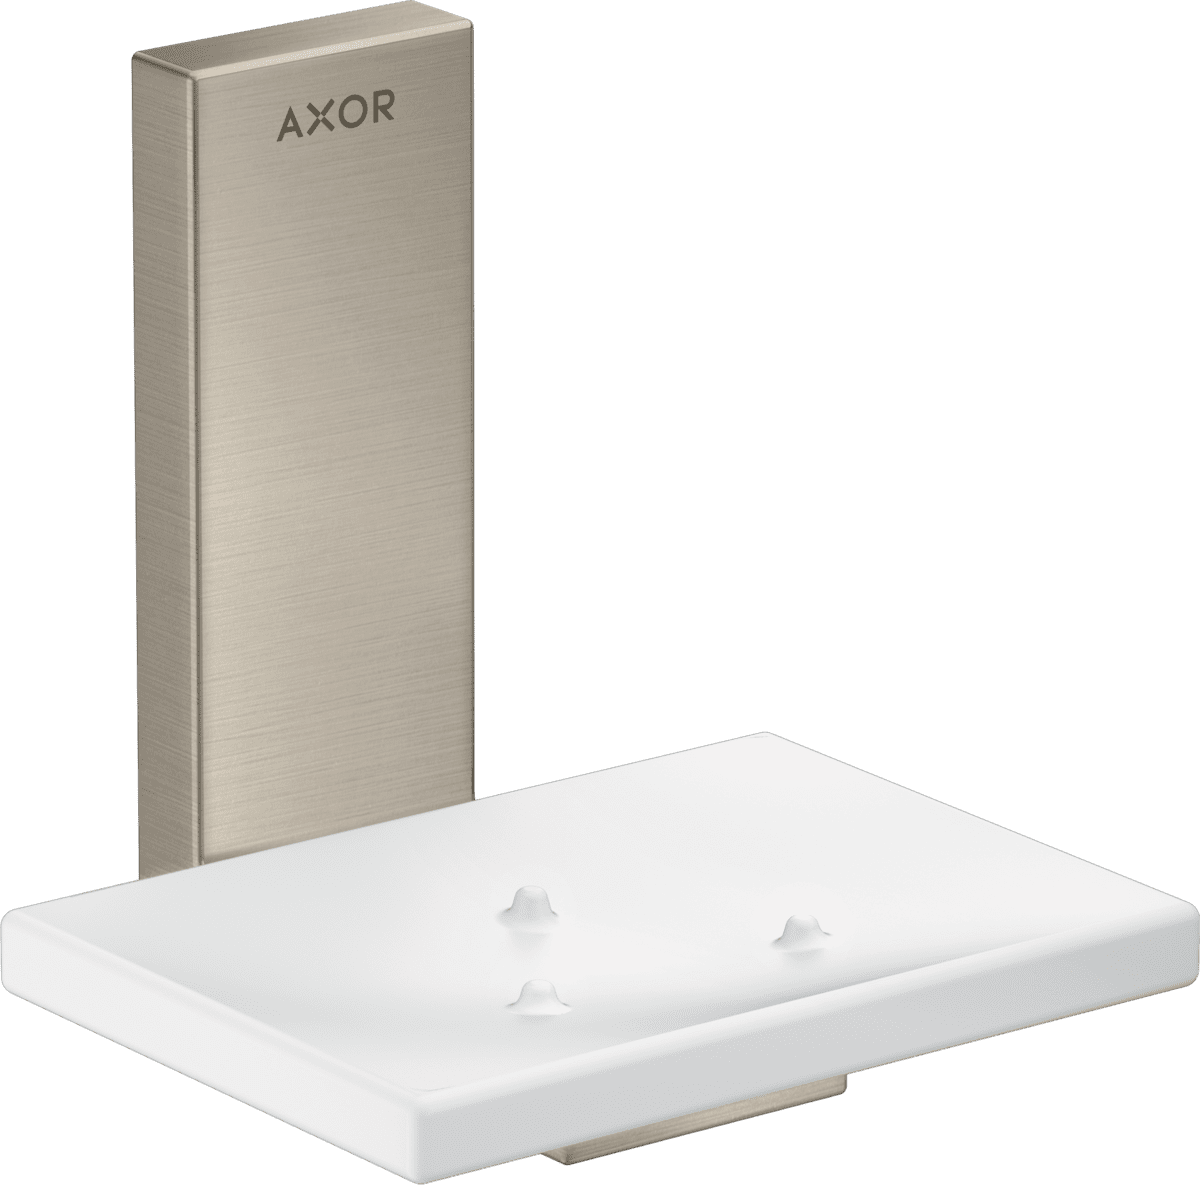 εικόνα του HANSGROHE AXOR Universal Rectangular Soap dish #42605820 - Brushed Nickel